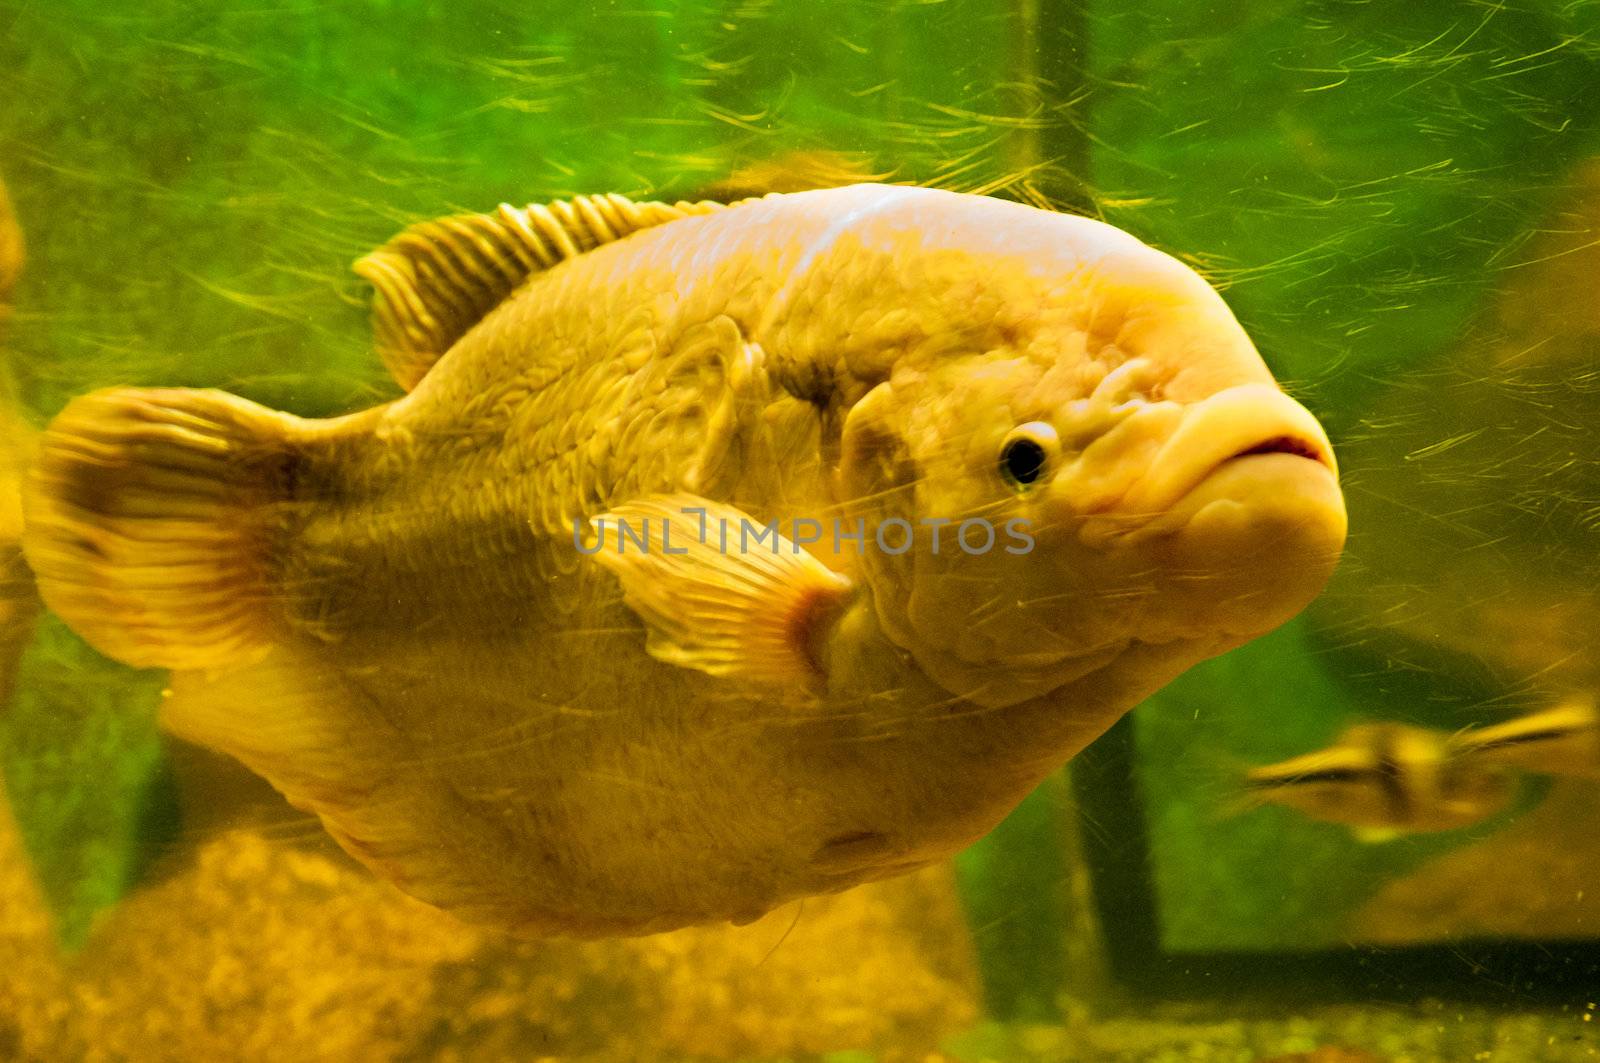 yellow fish under water by weltreisendertj